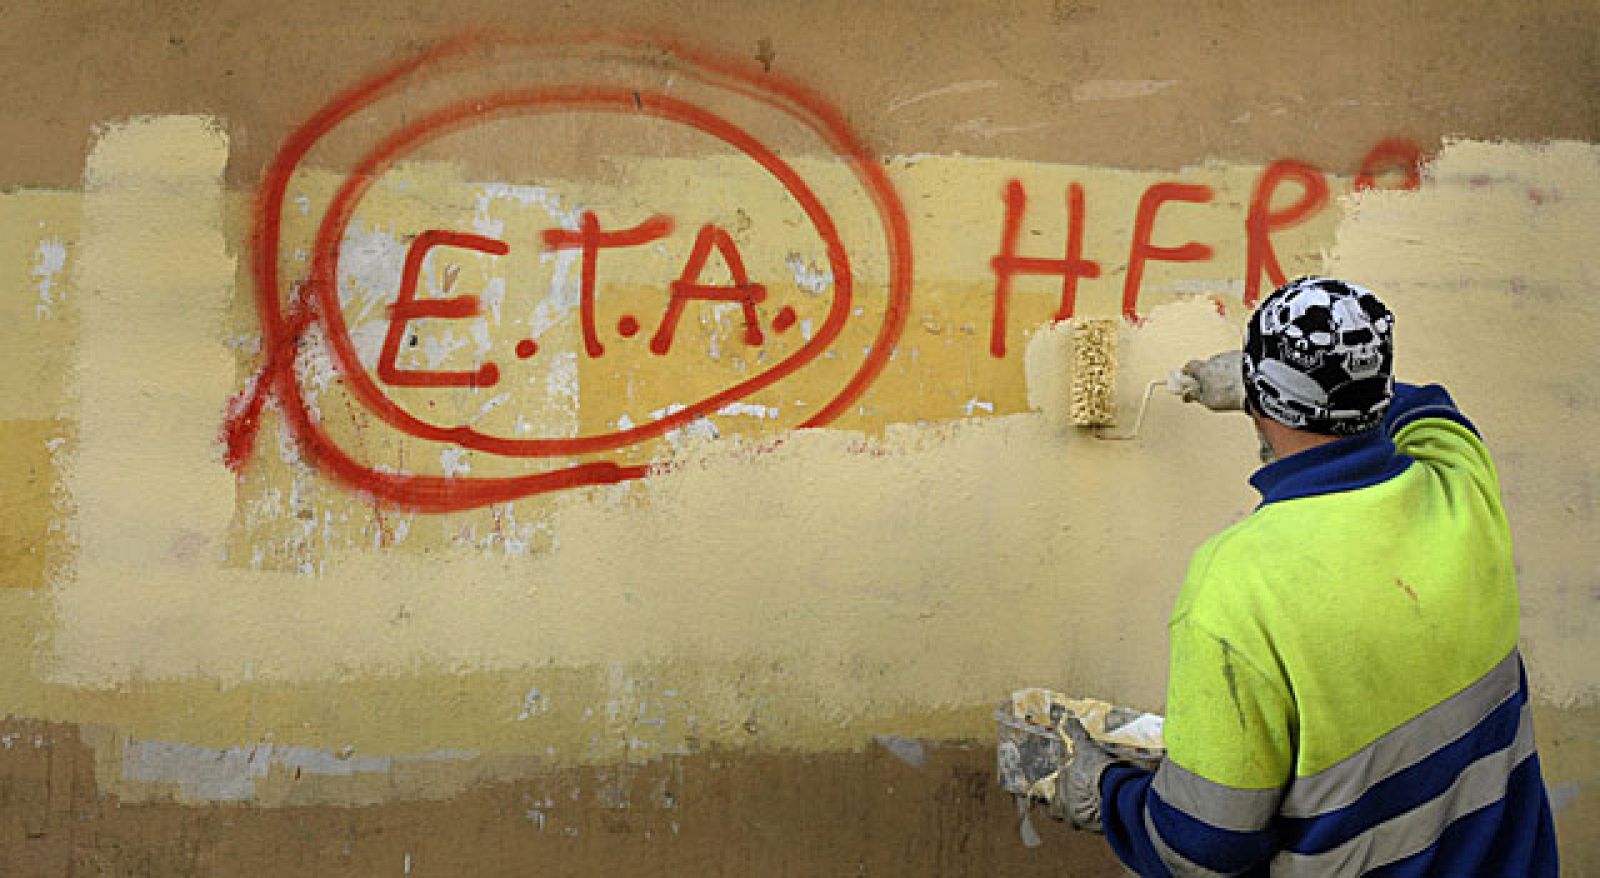 Un empleado municipal borra una pintada proetarra en Gernika.